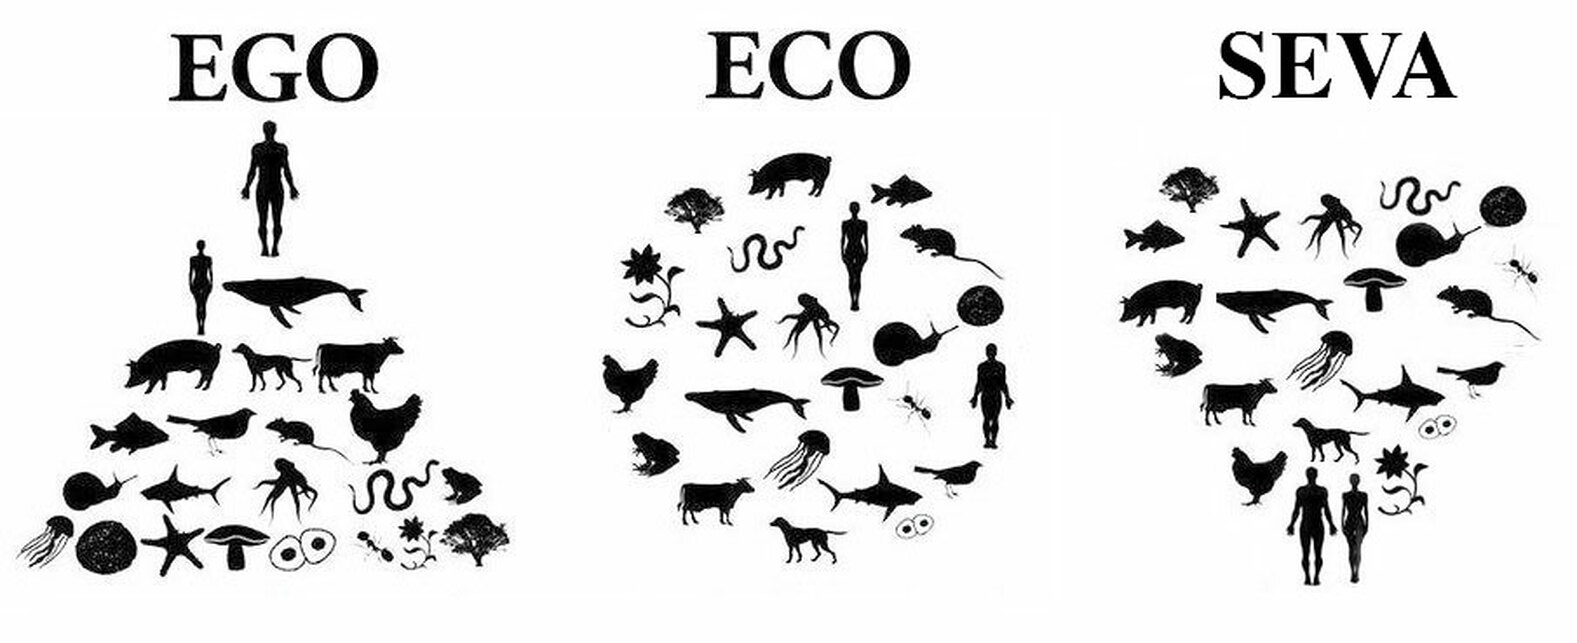 Az Ego-Eco-Seva ábrázolása.  Forrás: [2]